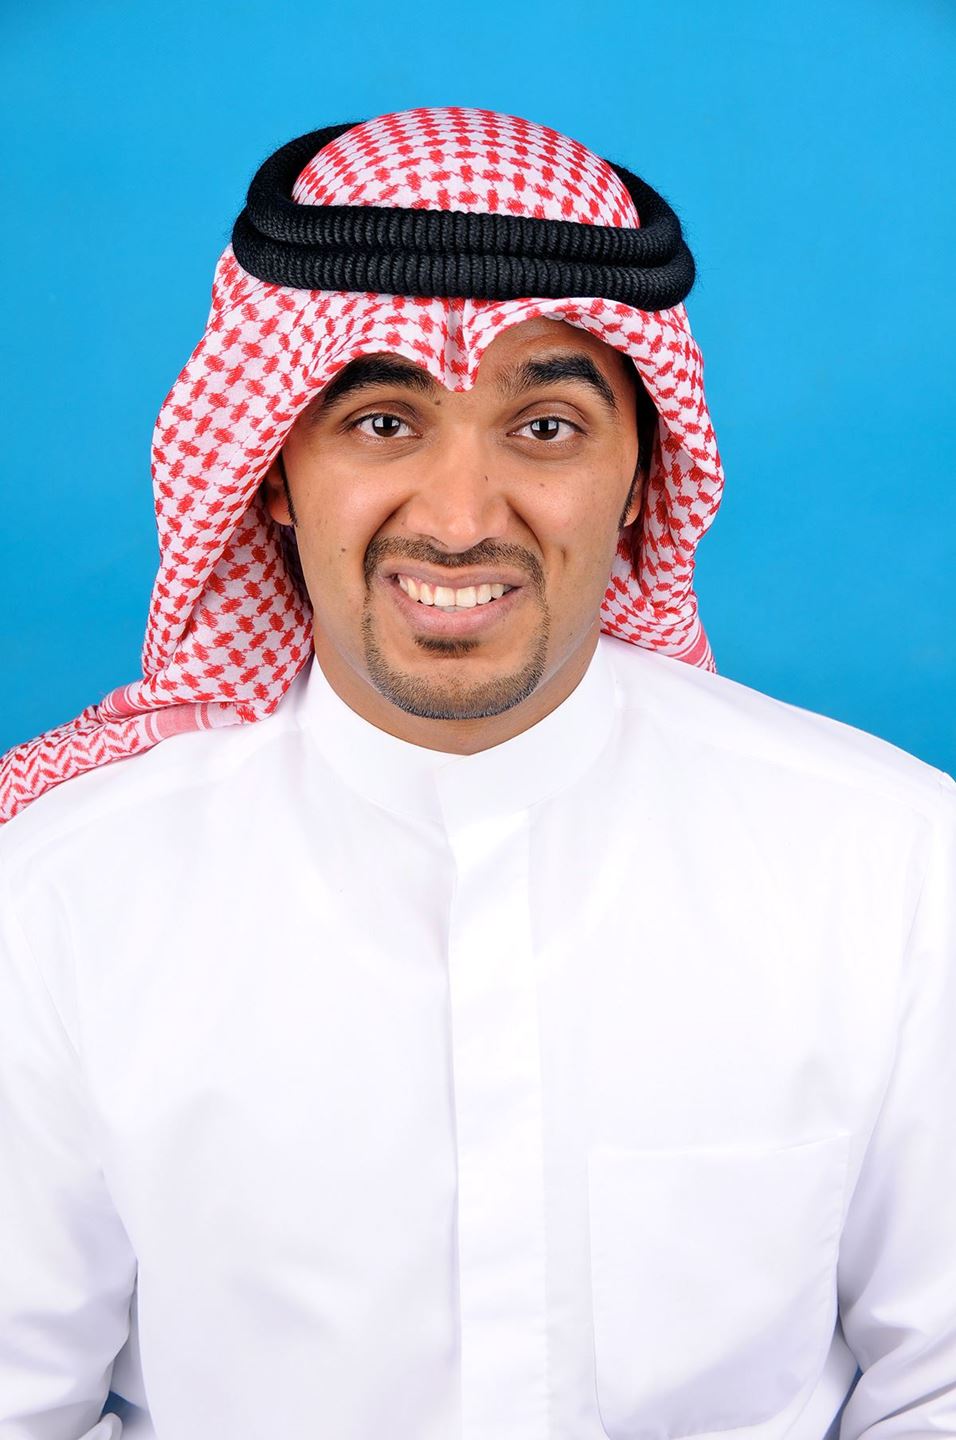 MASBI’ executive operations manager, Ahmed Al-Subai’e